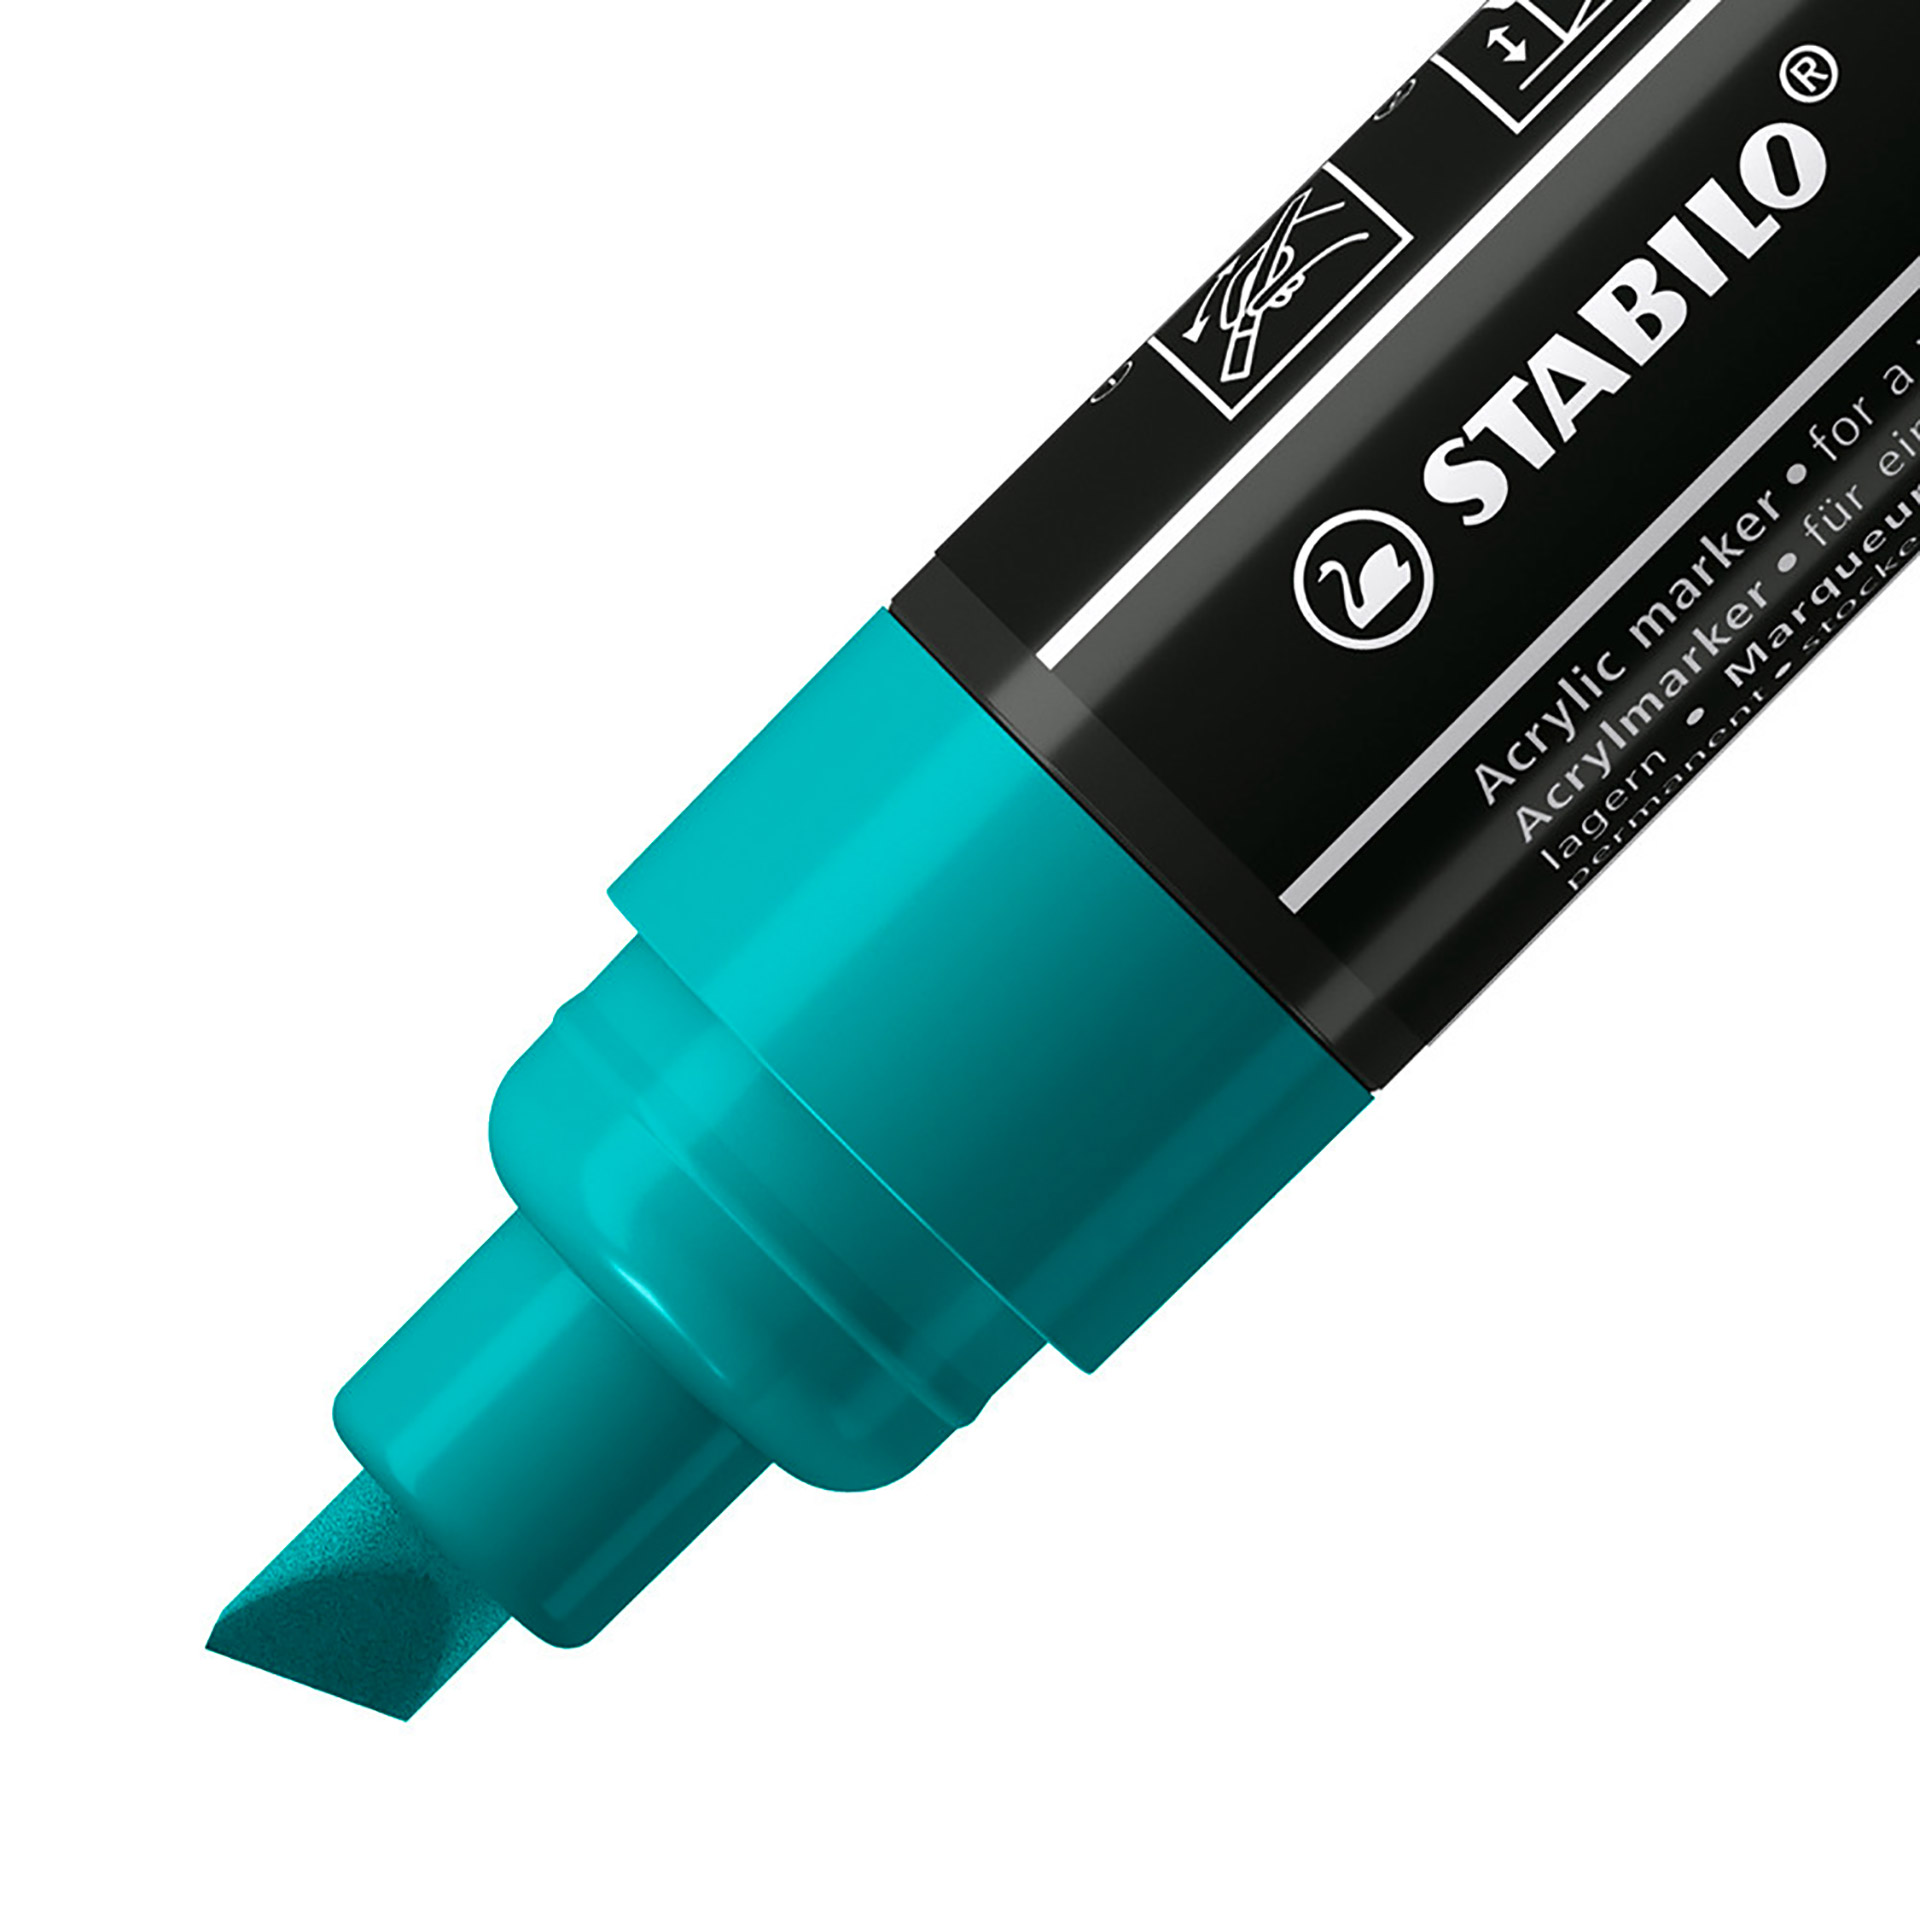 Stabilo Free Acrylic - T800c Punta A Scalpello 4-10mm - Confezione Da 5 - Verde, , large